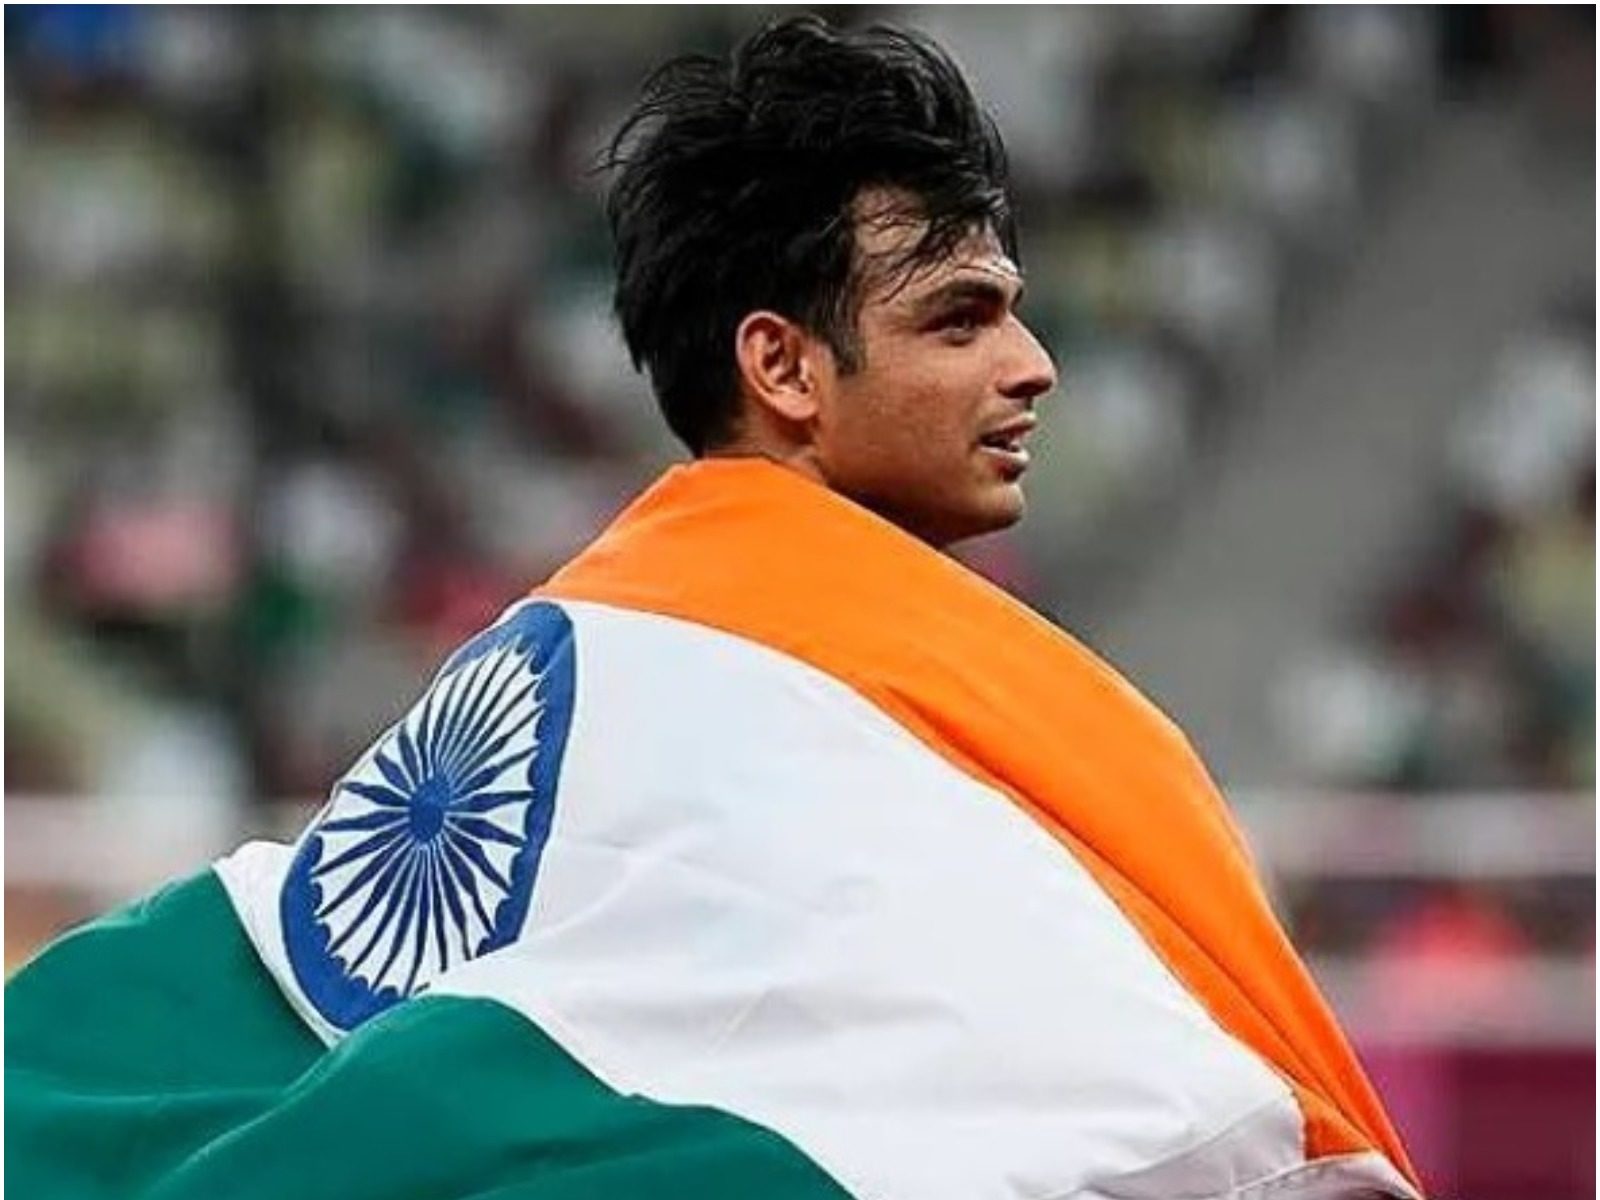 IPL 2022 के ओपनिंग मैच से पहले टोक्यो ओलंपिक में गोल्ड मेडल जीतने वाले नीरज चोपड़ा समेत कई सितार खिलाड़ियों को बीसीसीआई सम्मानित करेगी. (Neeraj Chopra Instagram)